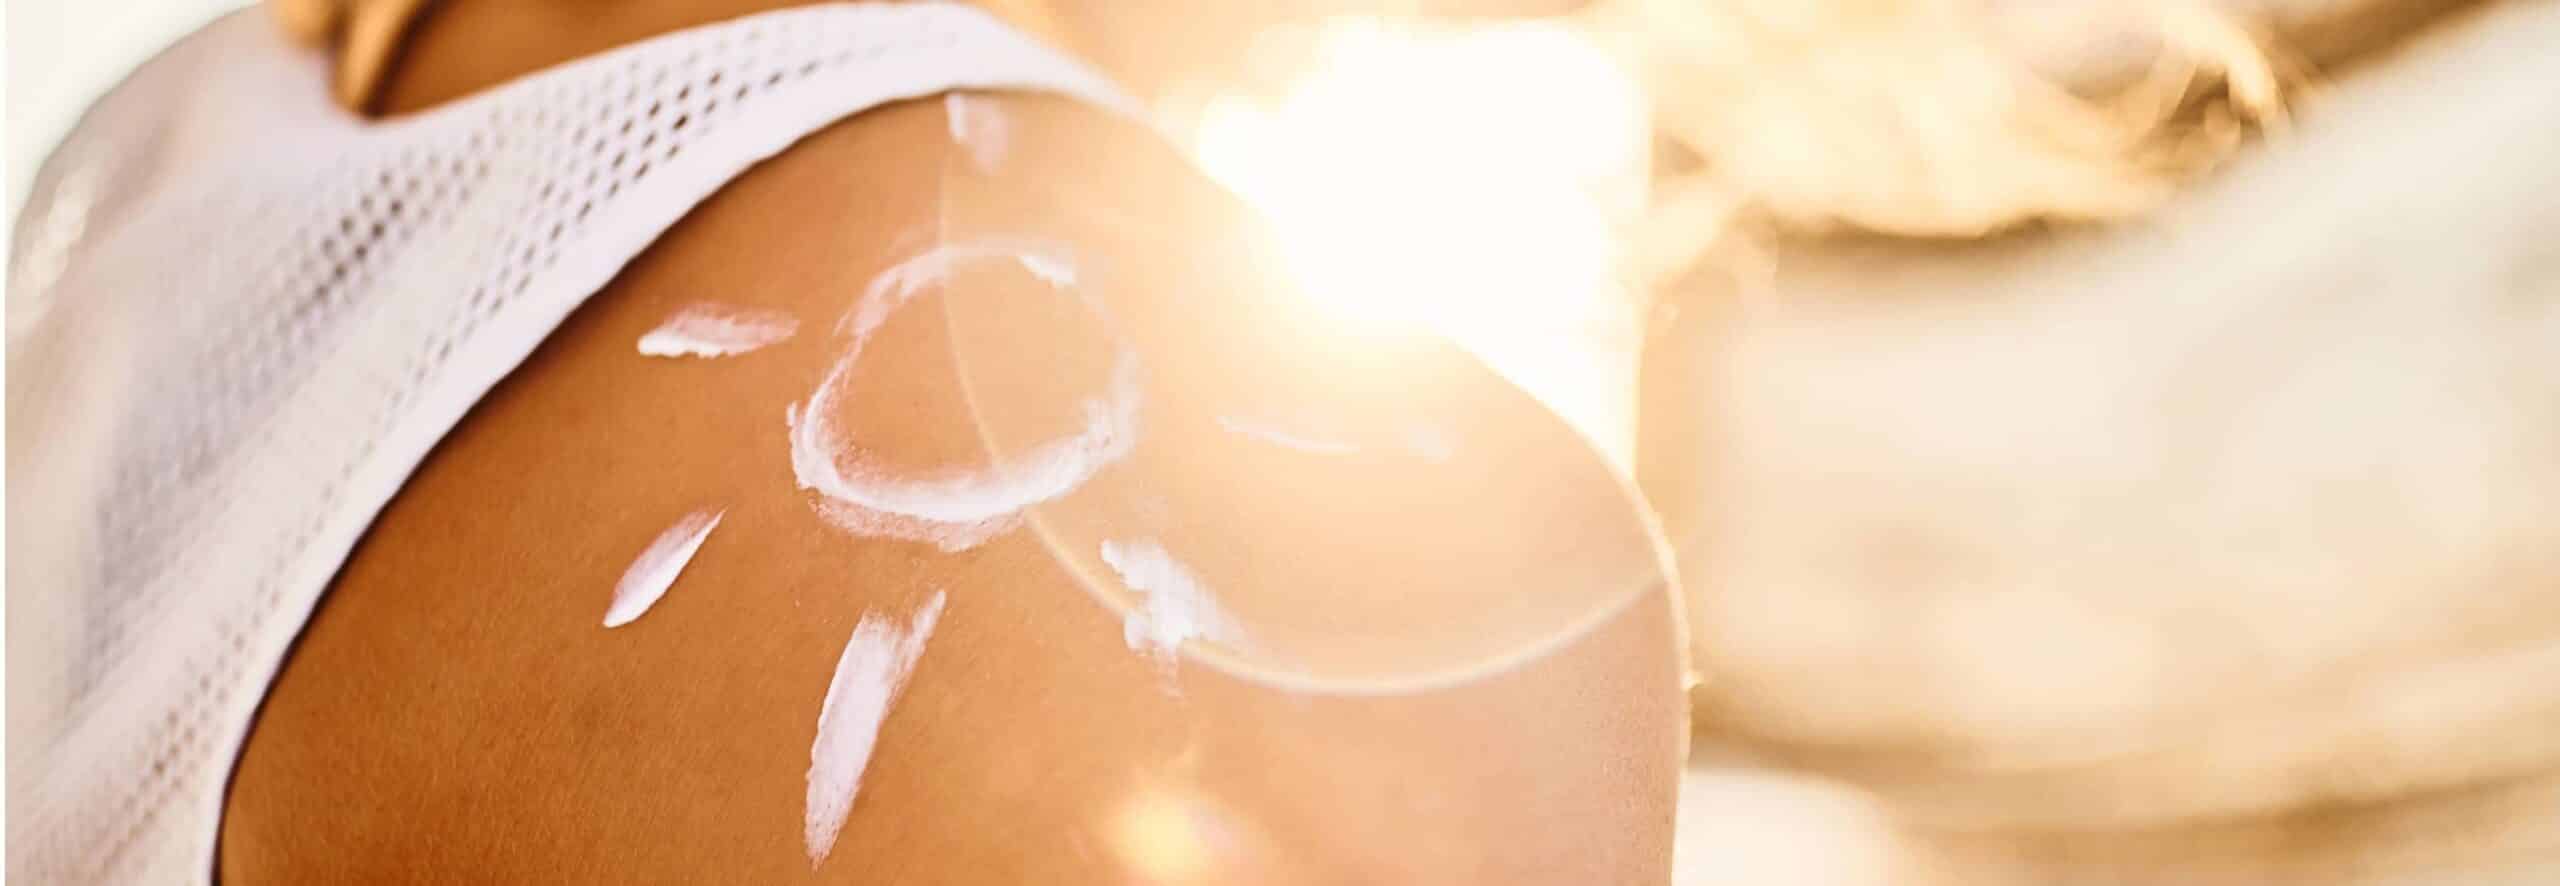 Les impacts du soleil sur la peau : du photovieillissement aux risques de cancer de la peau | Dr Lamquin | Nice